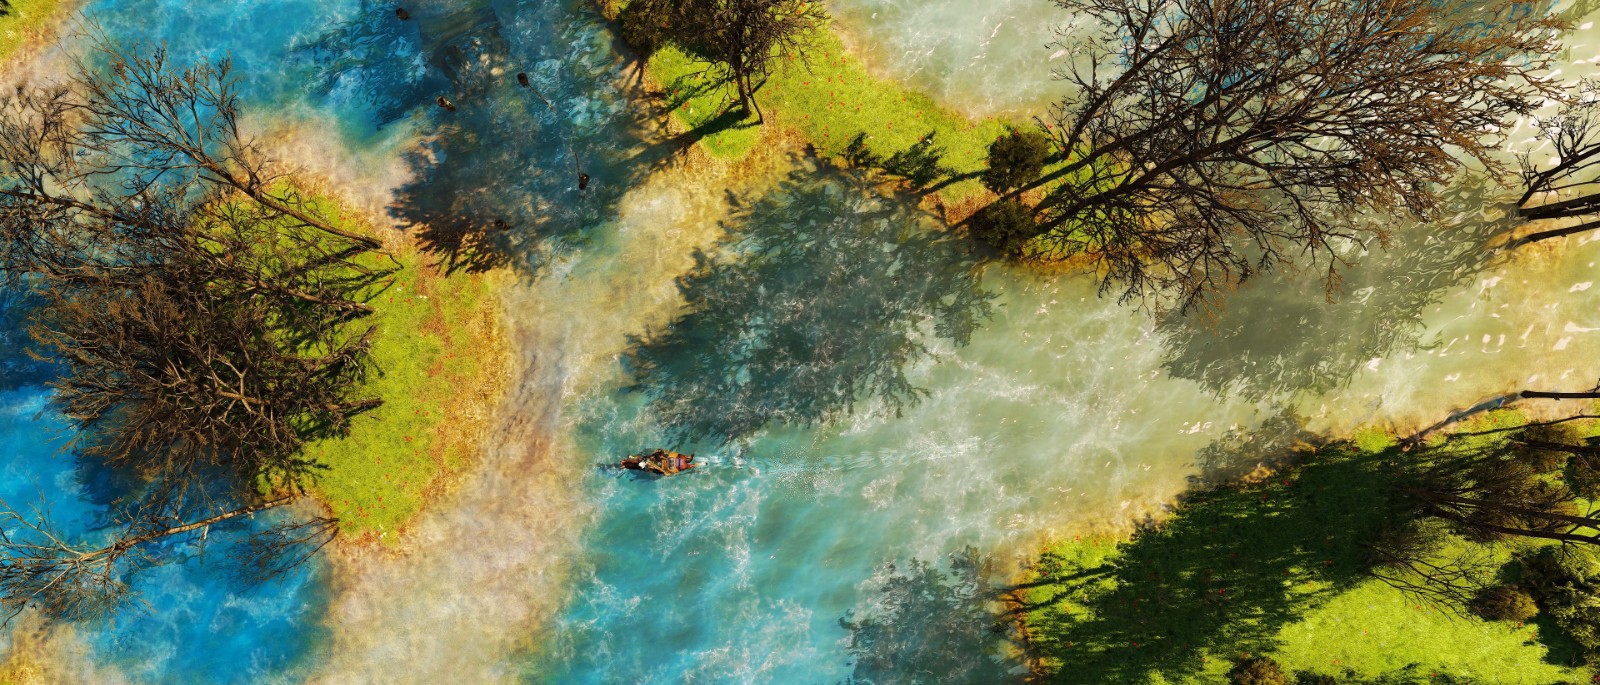 《巫师3：狂猎》次世代拍照模式美图赏 风景太美丽 二次世界 第11张